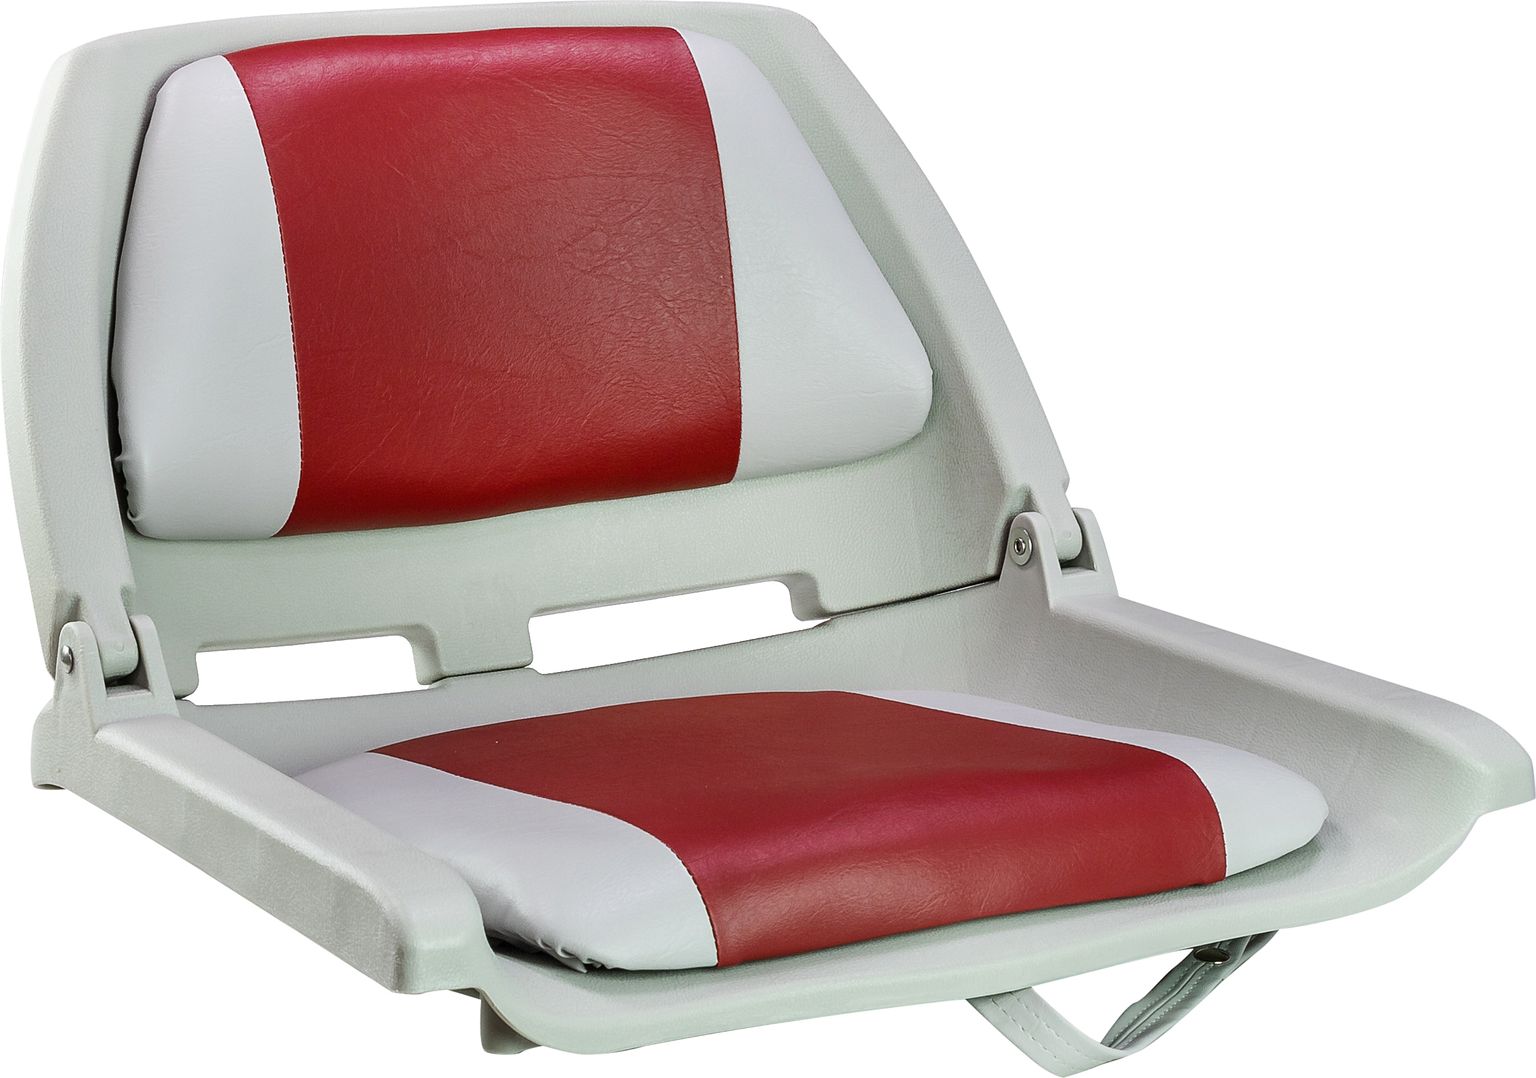 Кресло мягкое складное, обивка винил, цвет серый/красный, Marine Rocket 75109GR-MR